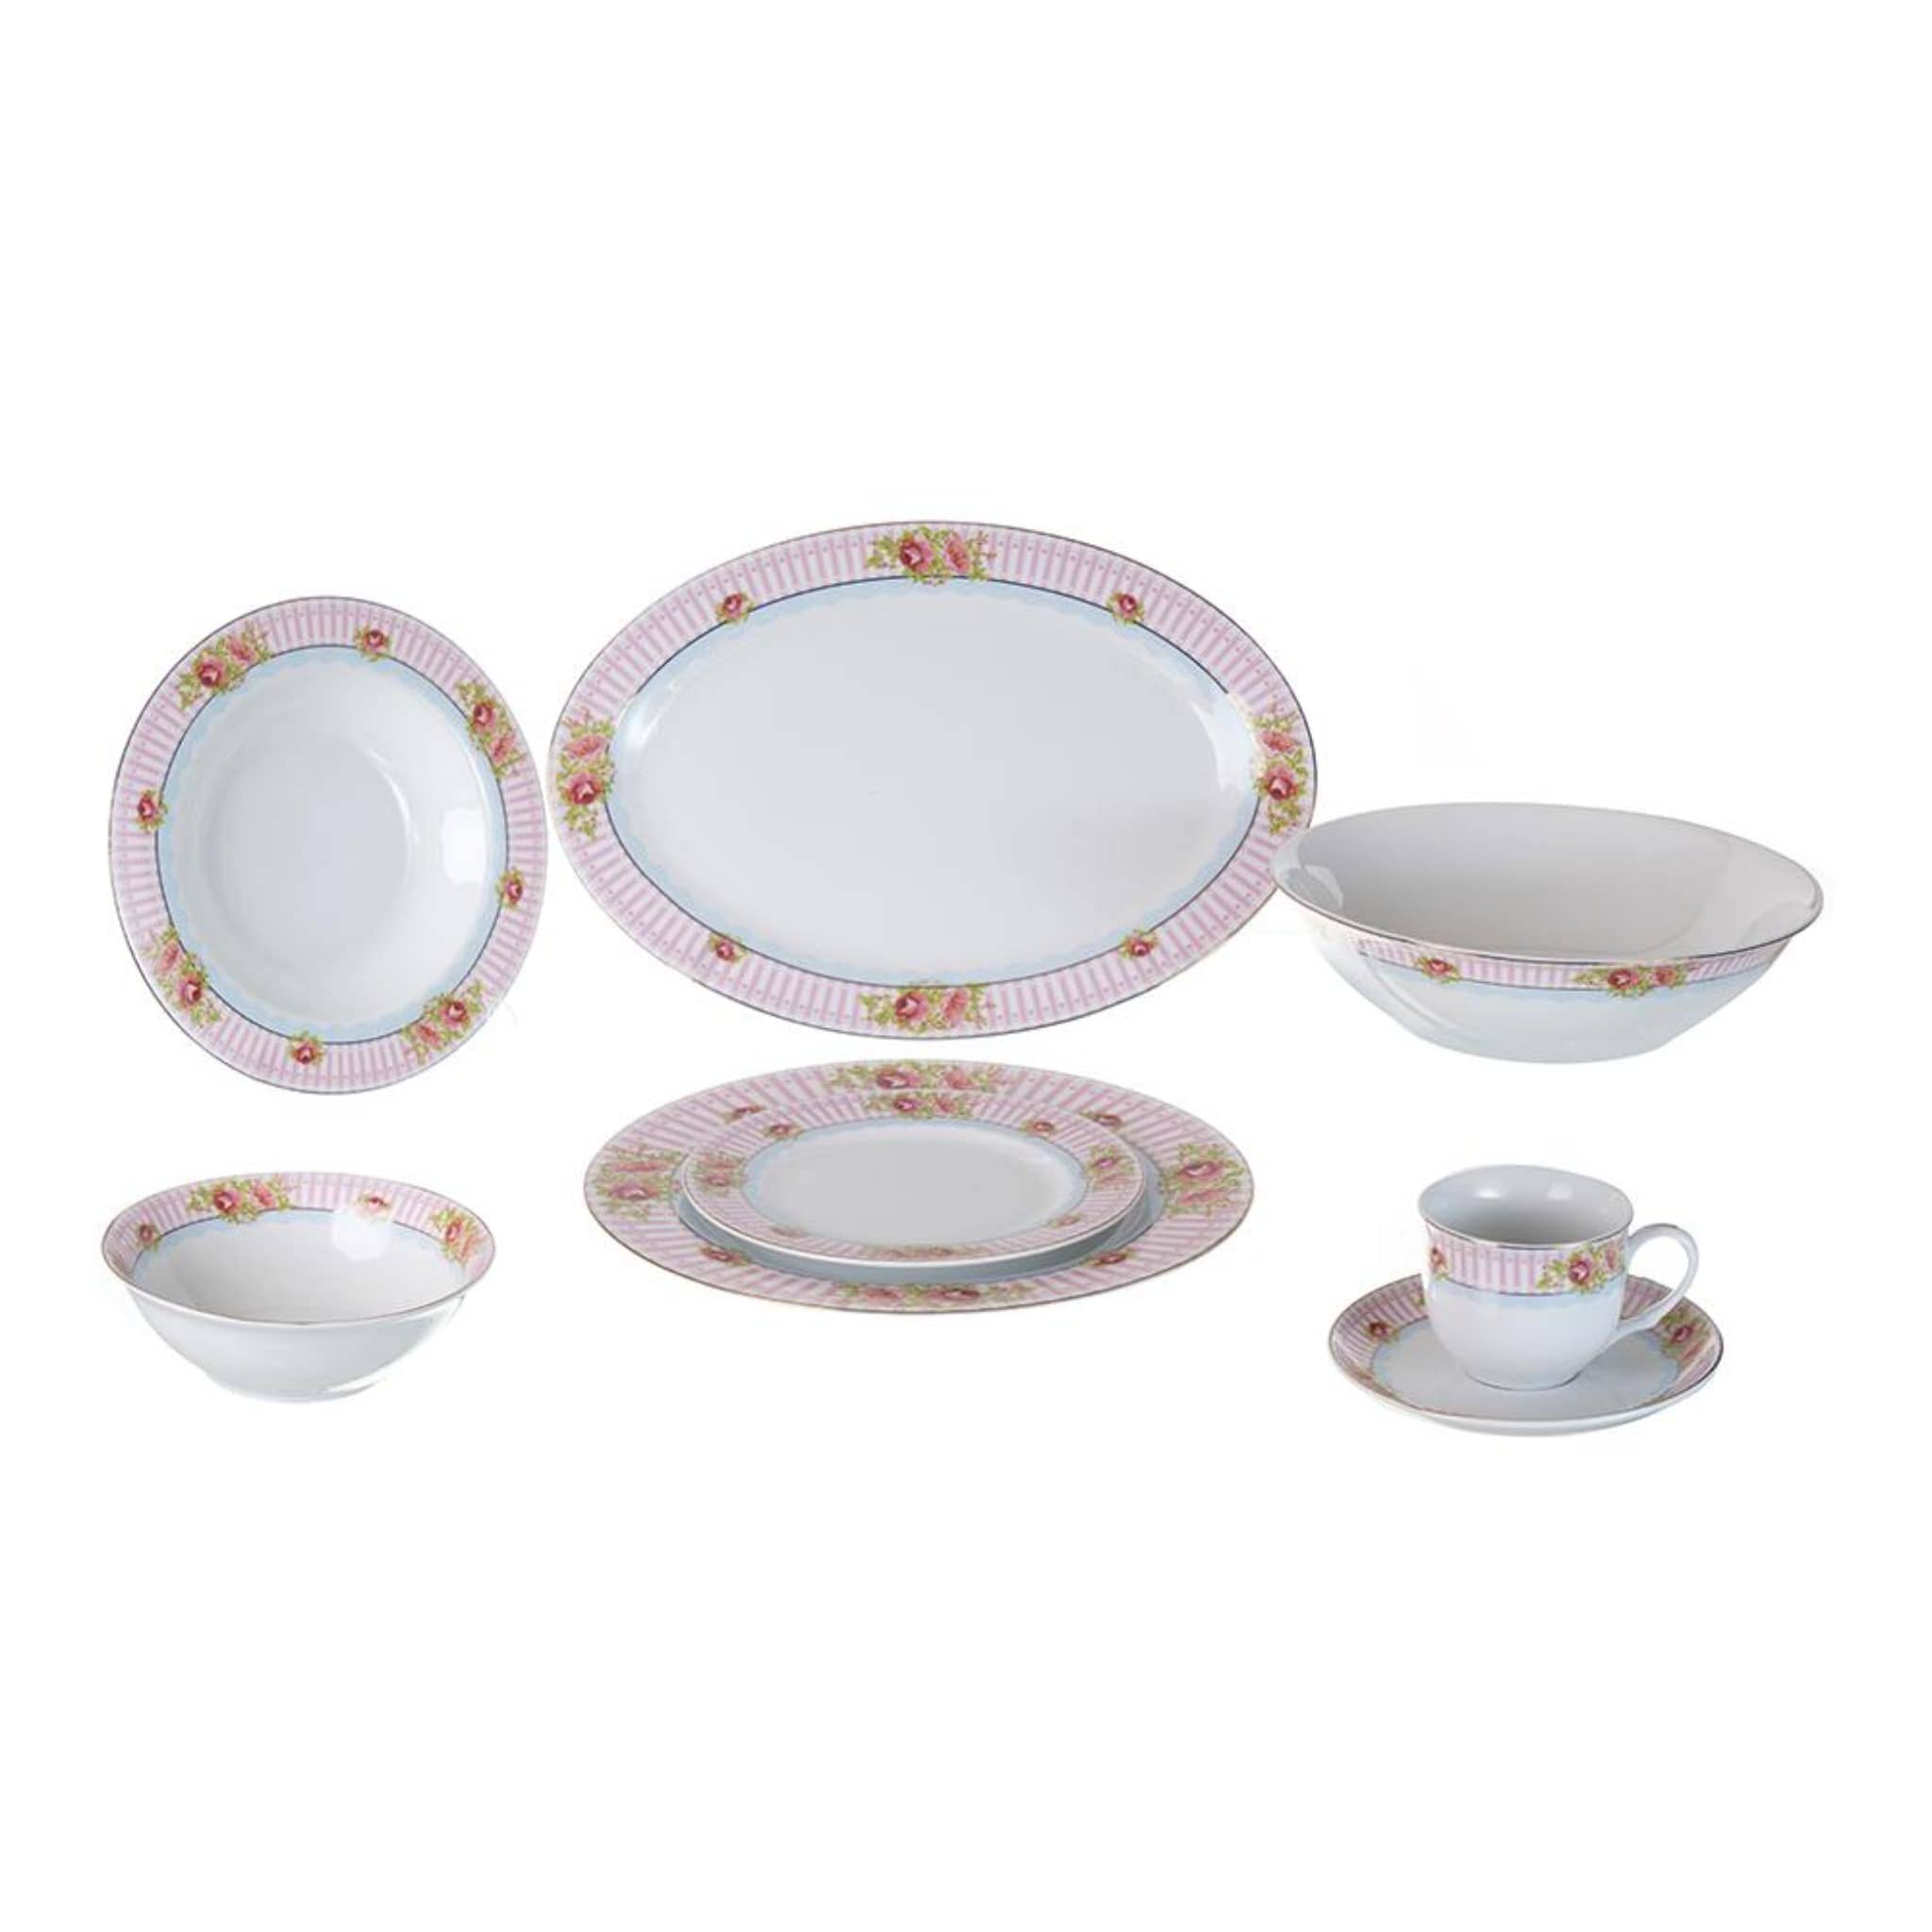 Dubai Porcelain - Daily Use Dinner Set 38 Pieces - Porcelain - Floral Design & Pink - 130003071